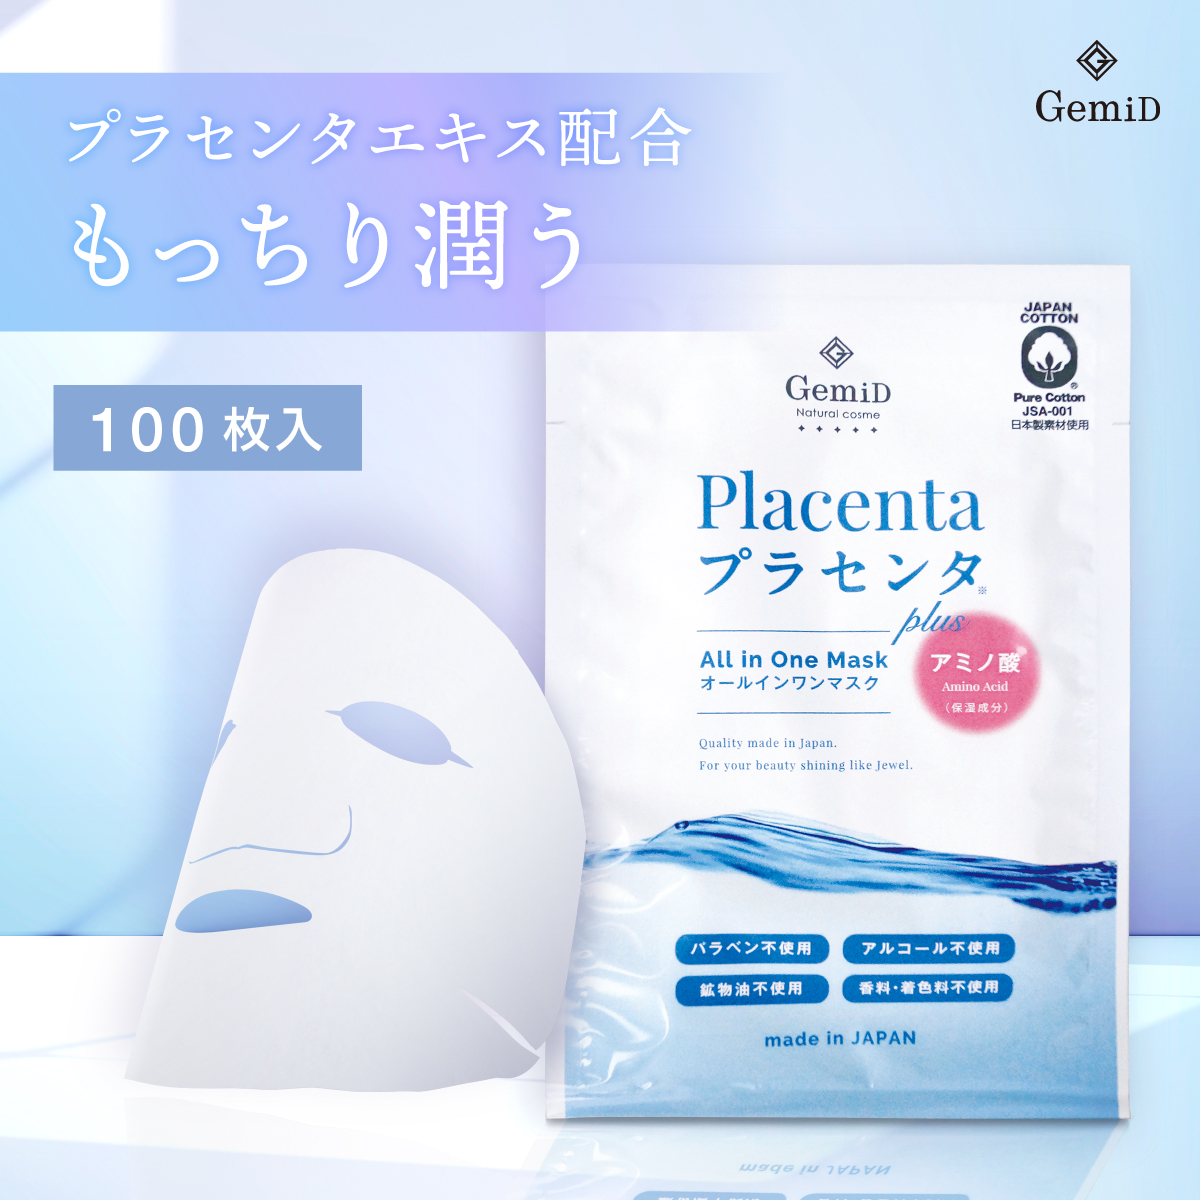 【春のSALE特価】フェイシャルマスク プラセンタ plus GemiD (100枚)